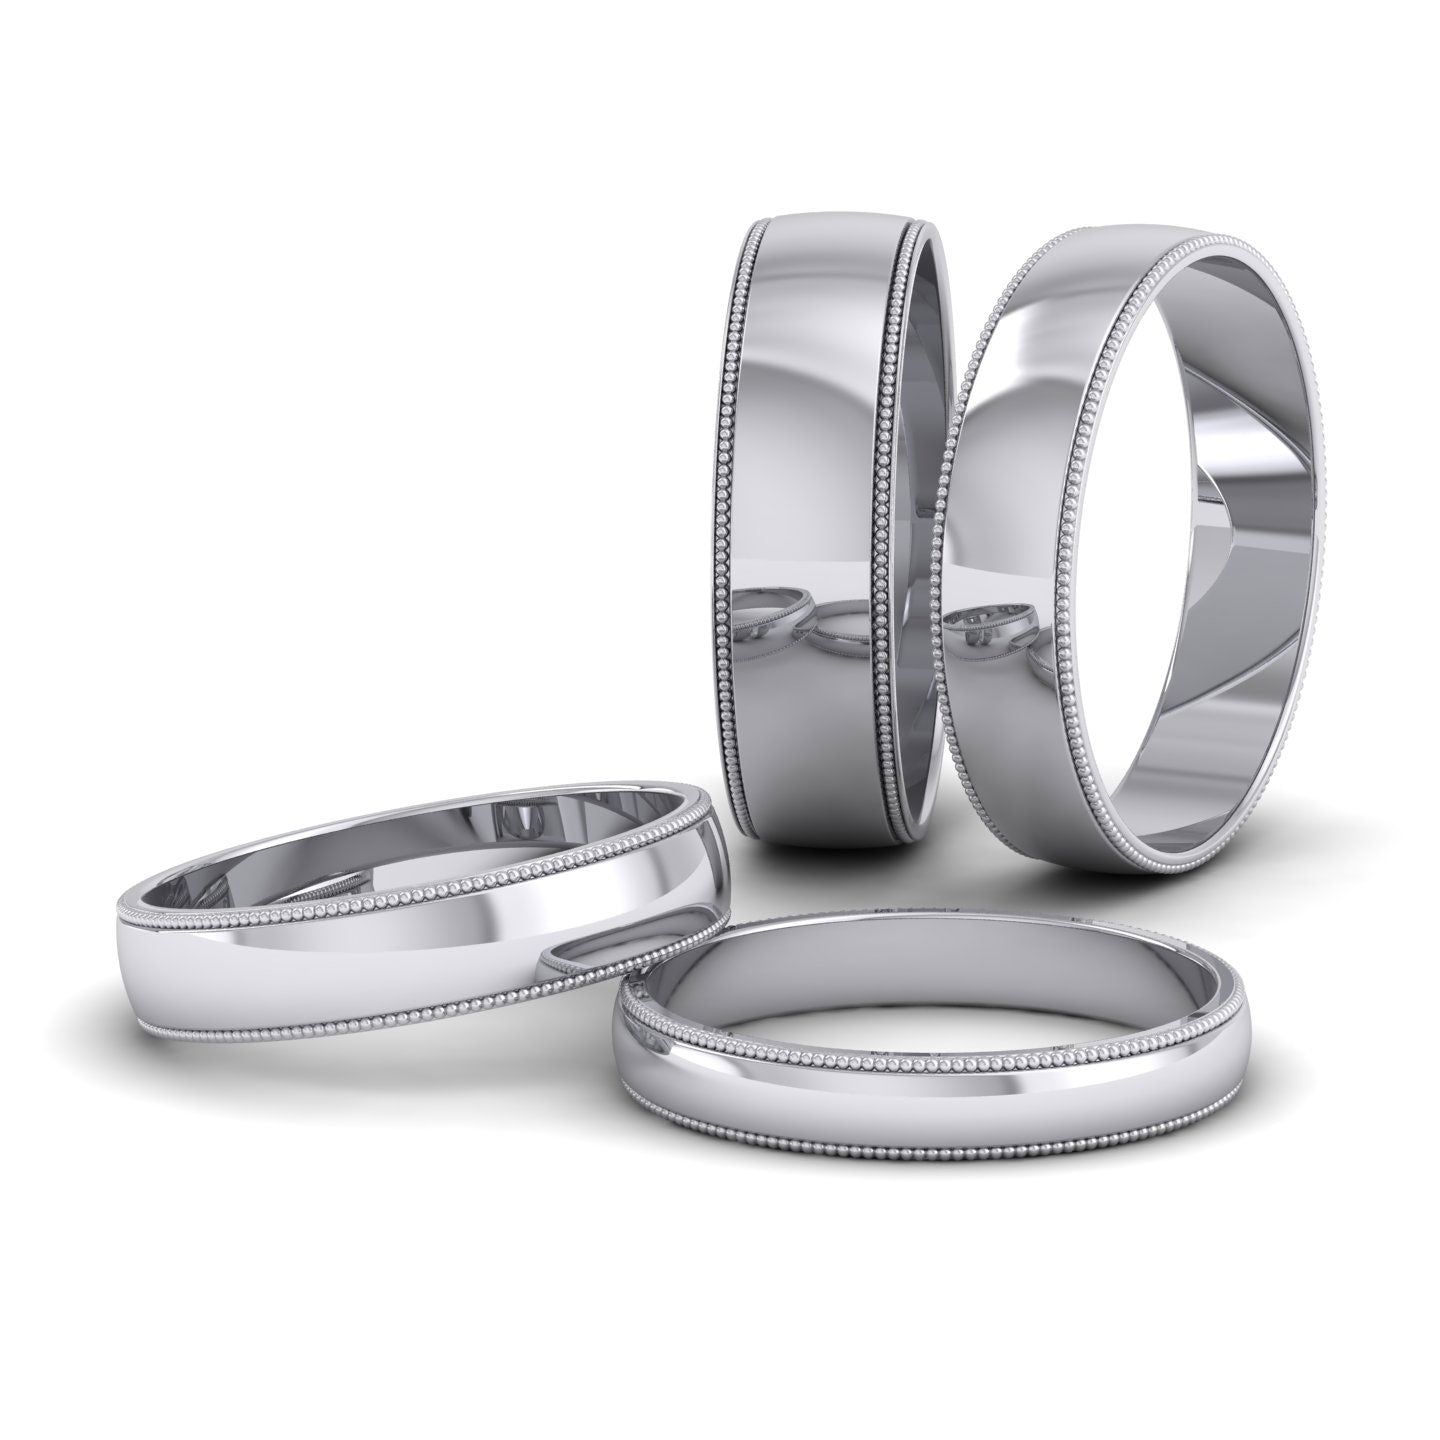 Millgrained Edge 950 Platinum 3mm Wedding Ring